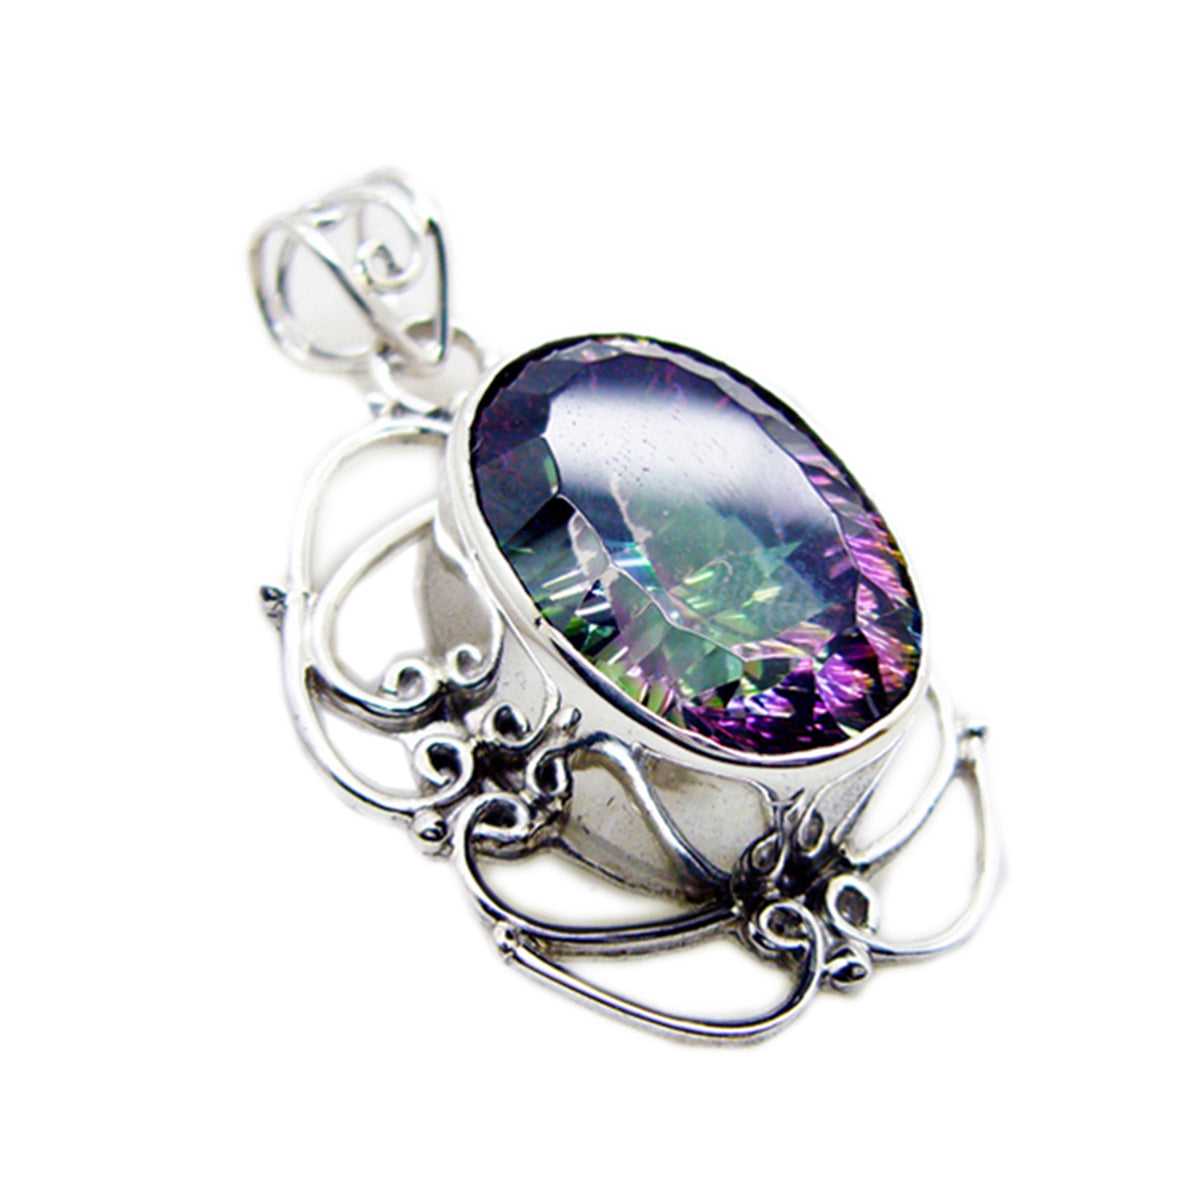 Riyo – pierres précieuses ovales à facettes multicolores, quartz mystique, pendentif en argent massif, cadeau d'anniversaire